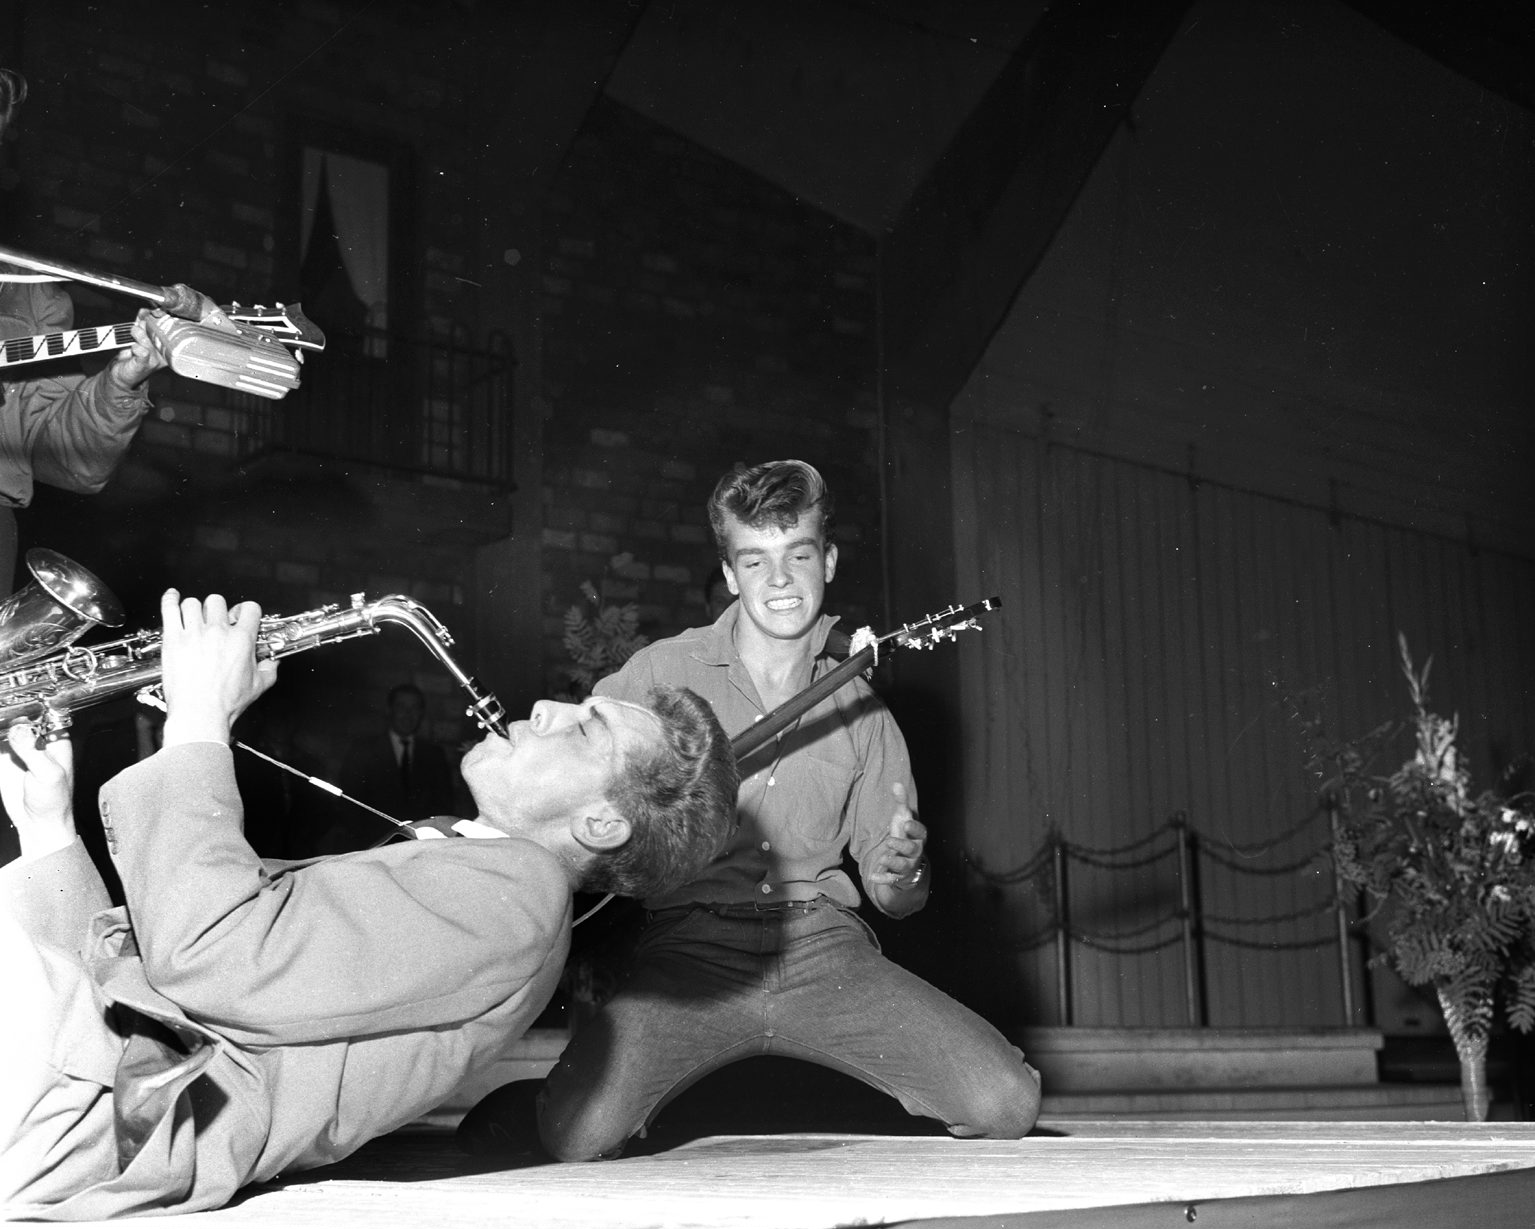 Smiling Tommy, Odd Gisløy, ga ut en av de første ordentlige rockesinglene i Norge med egenkomponerte «Dancin’ With My Rockin’ Shoes». Her i aksjon under Oslomesterskapet i rock i 1958.